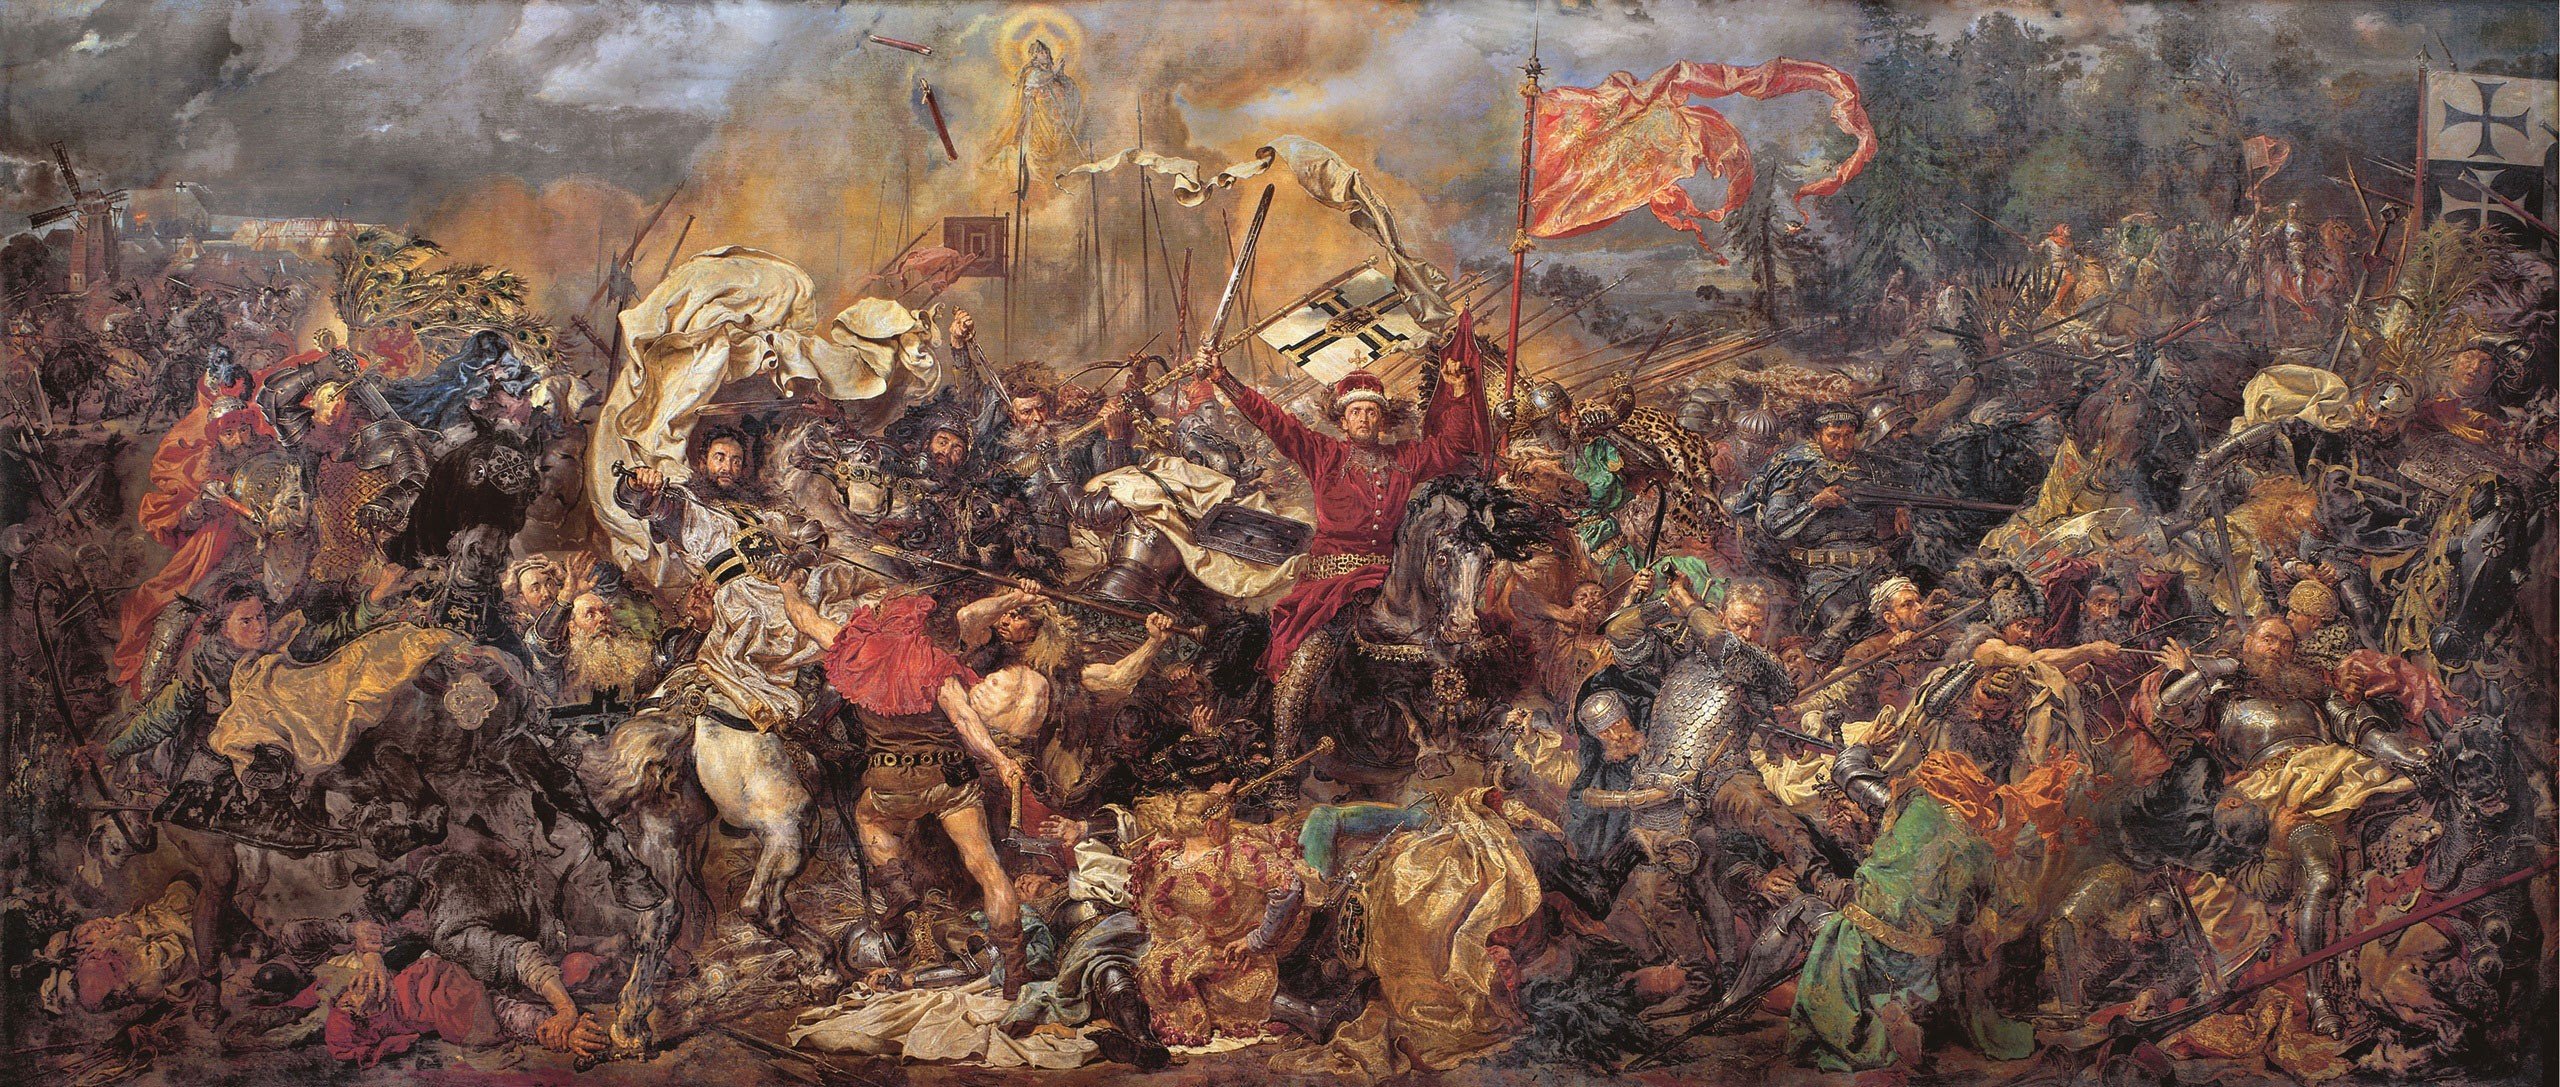 Zalgiris, Battlefields, Battle of Grunwald, Classic art, Jan Matejko, Grunwald, Dokopać Szwabom, 1410, Poland Wallpaper